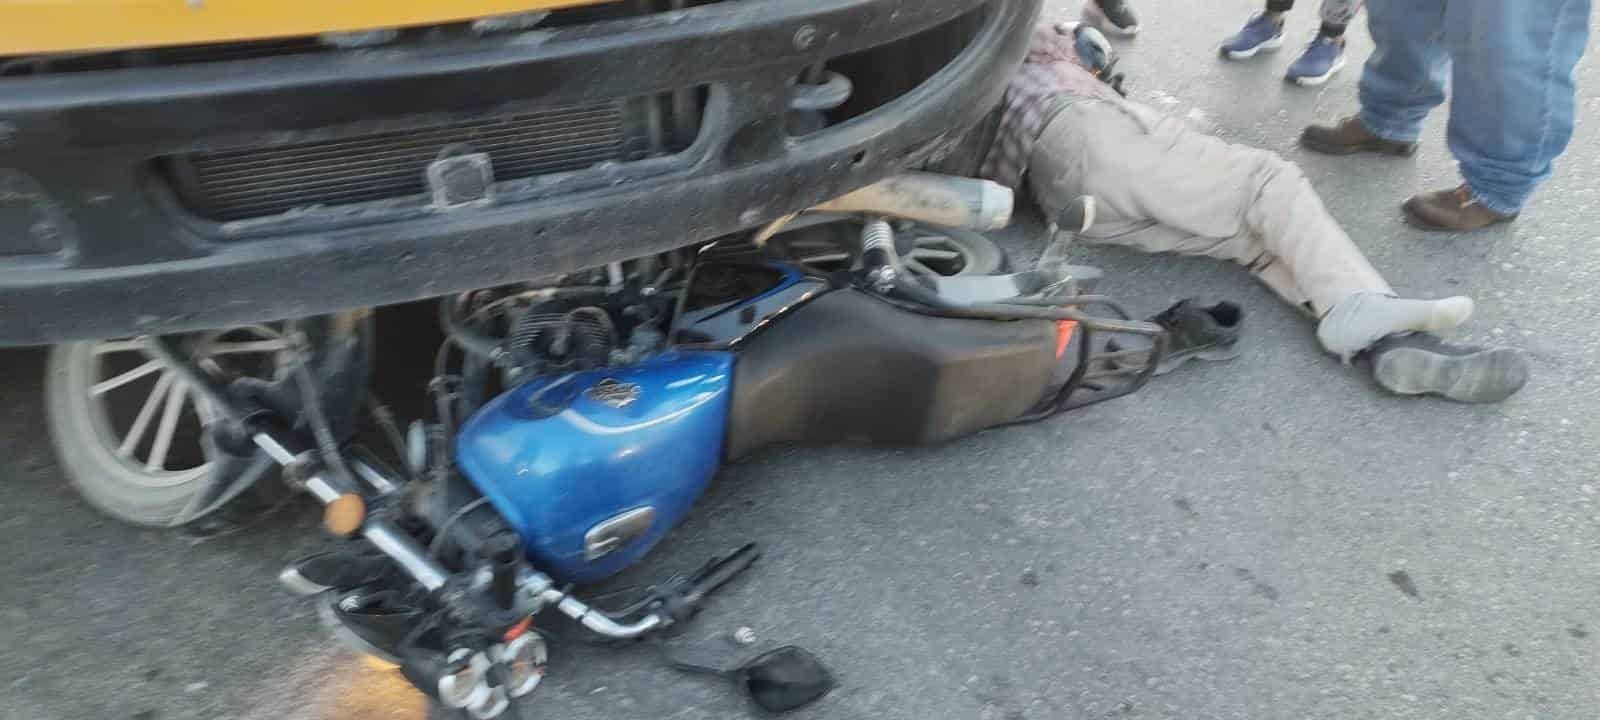 Imprudente conductor  impacta su moto con camión